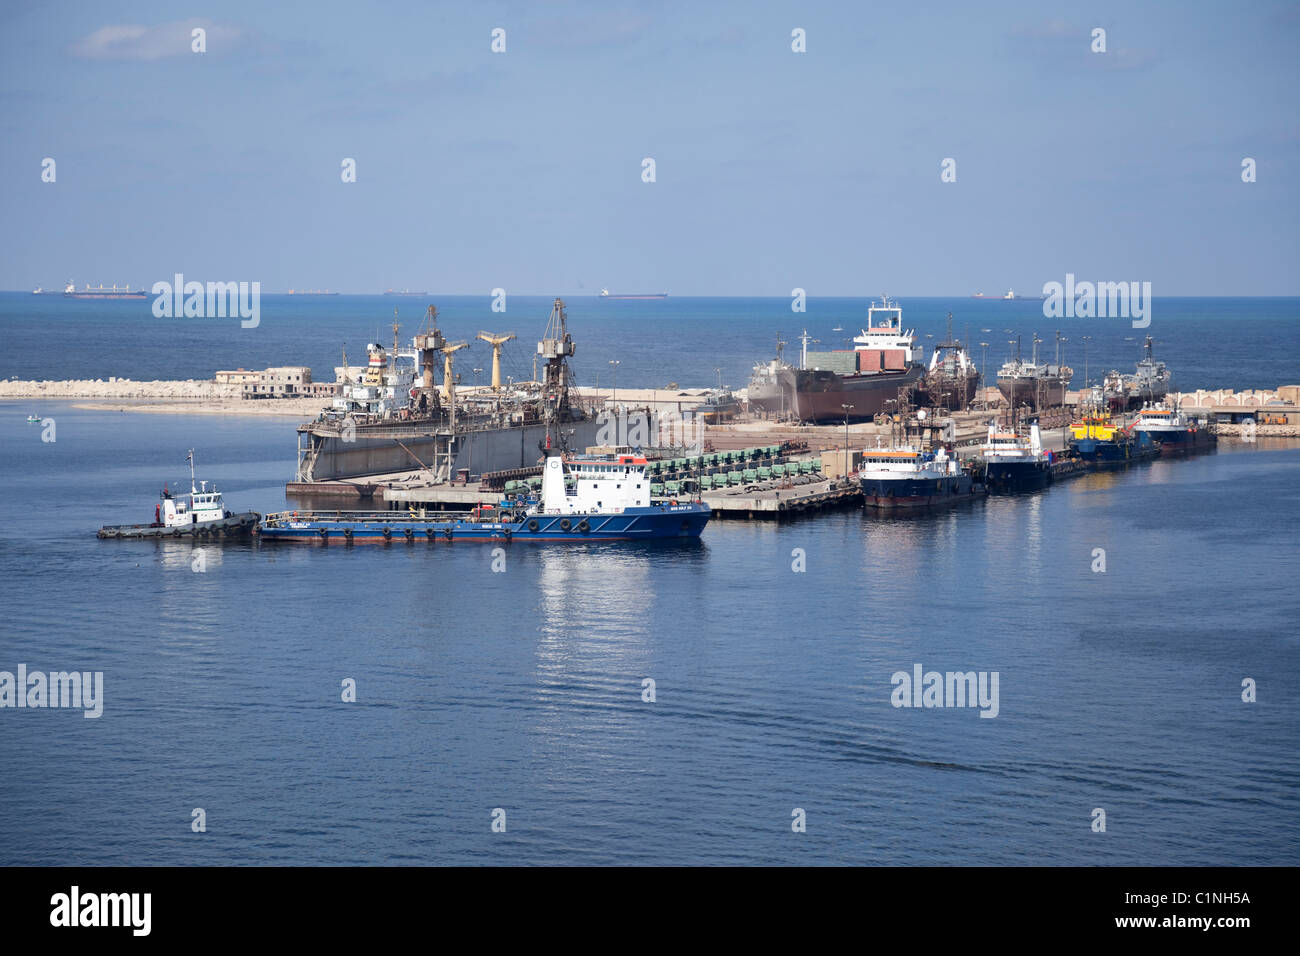 Chantier de navires industriels de faire la réparation et la peinture dans le port d'Alexandrie. Banque D'Images